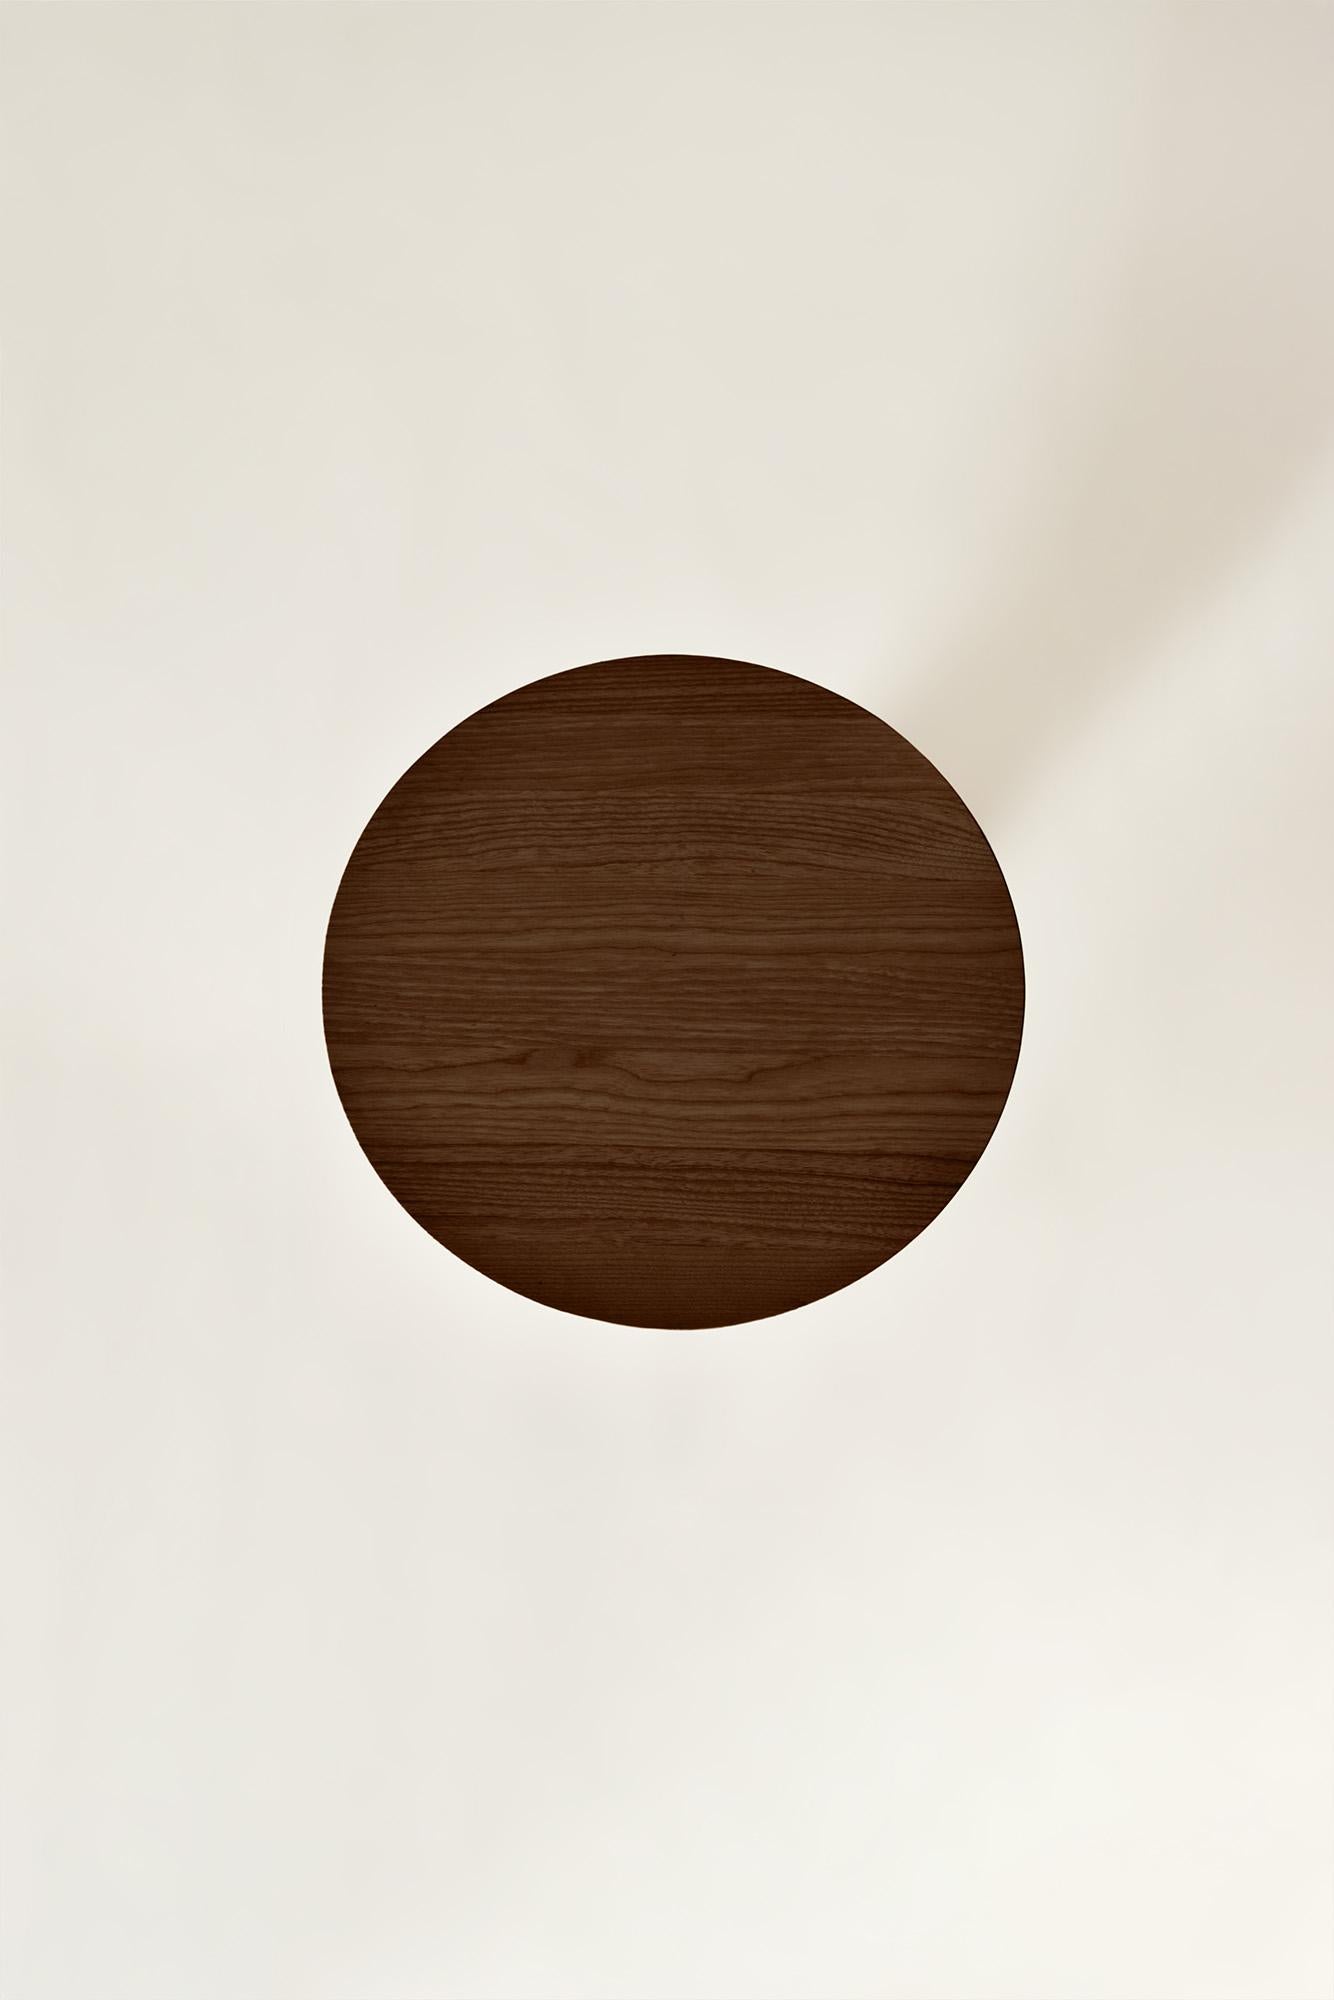 La table basse Convesso incarne l'essence de notre collection 2023, réalisée en collaboration avec les designers de Cono Studio. Un meuble contemporain, tendance mais fidèle à la qualité, à l'originalité et à l'élégance de l'authentique artisanat